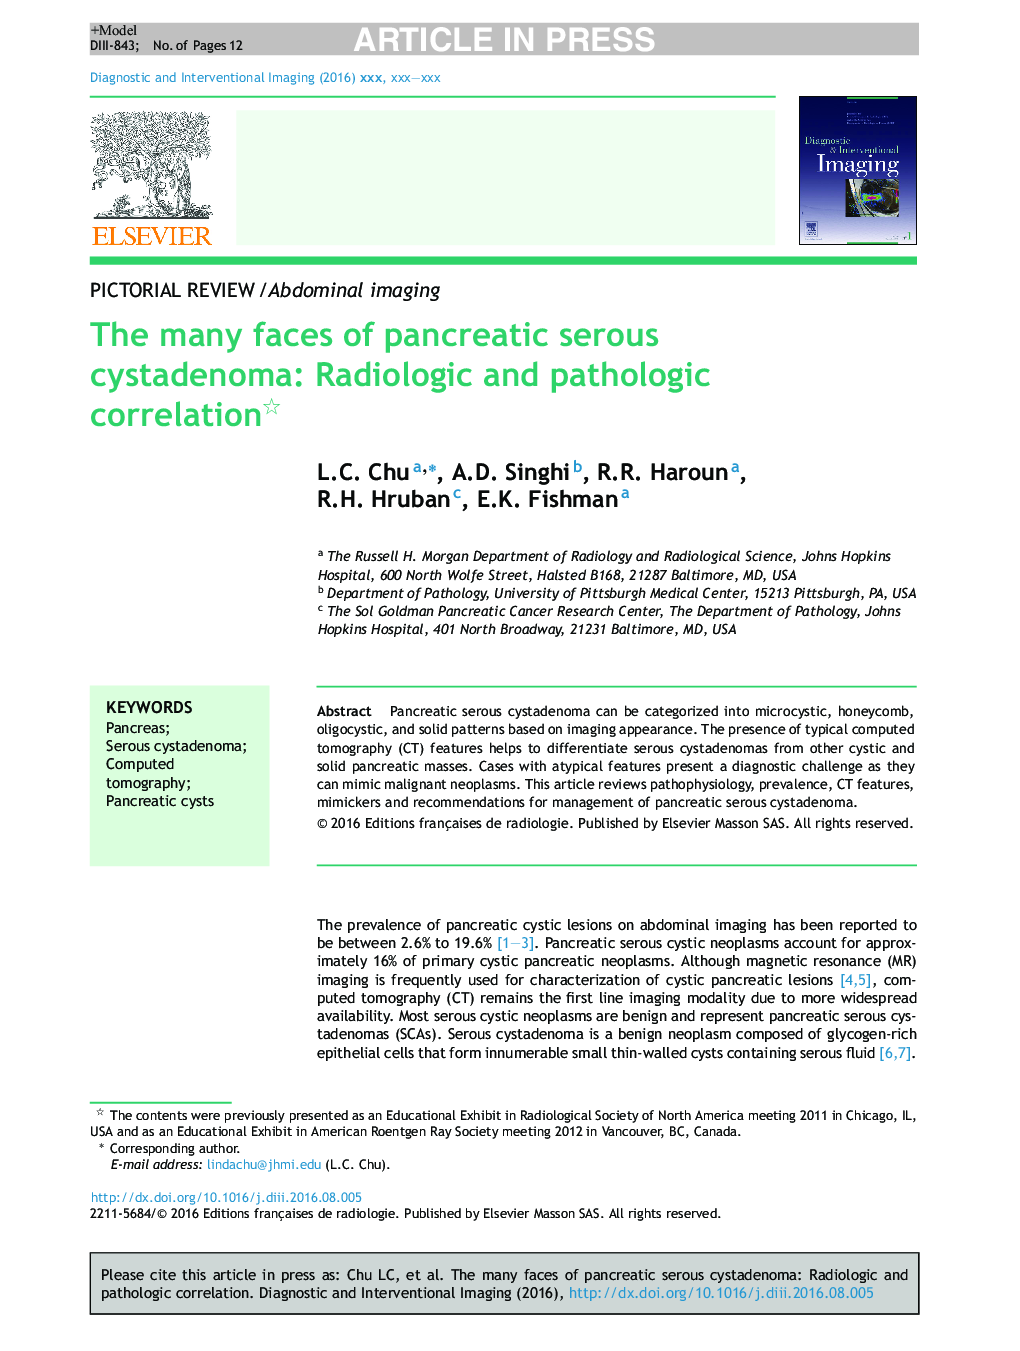 The many faces of pancreatic serous cystadenoma: Radiologic and pathologic correlation